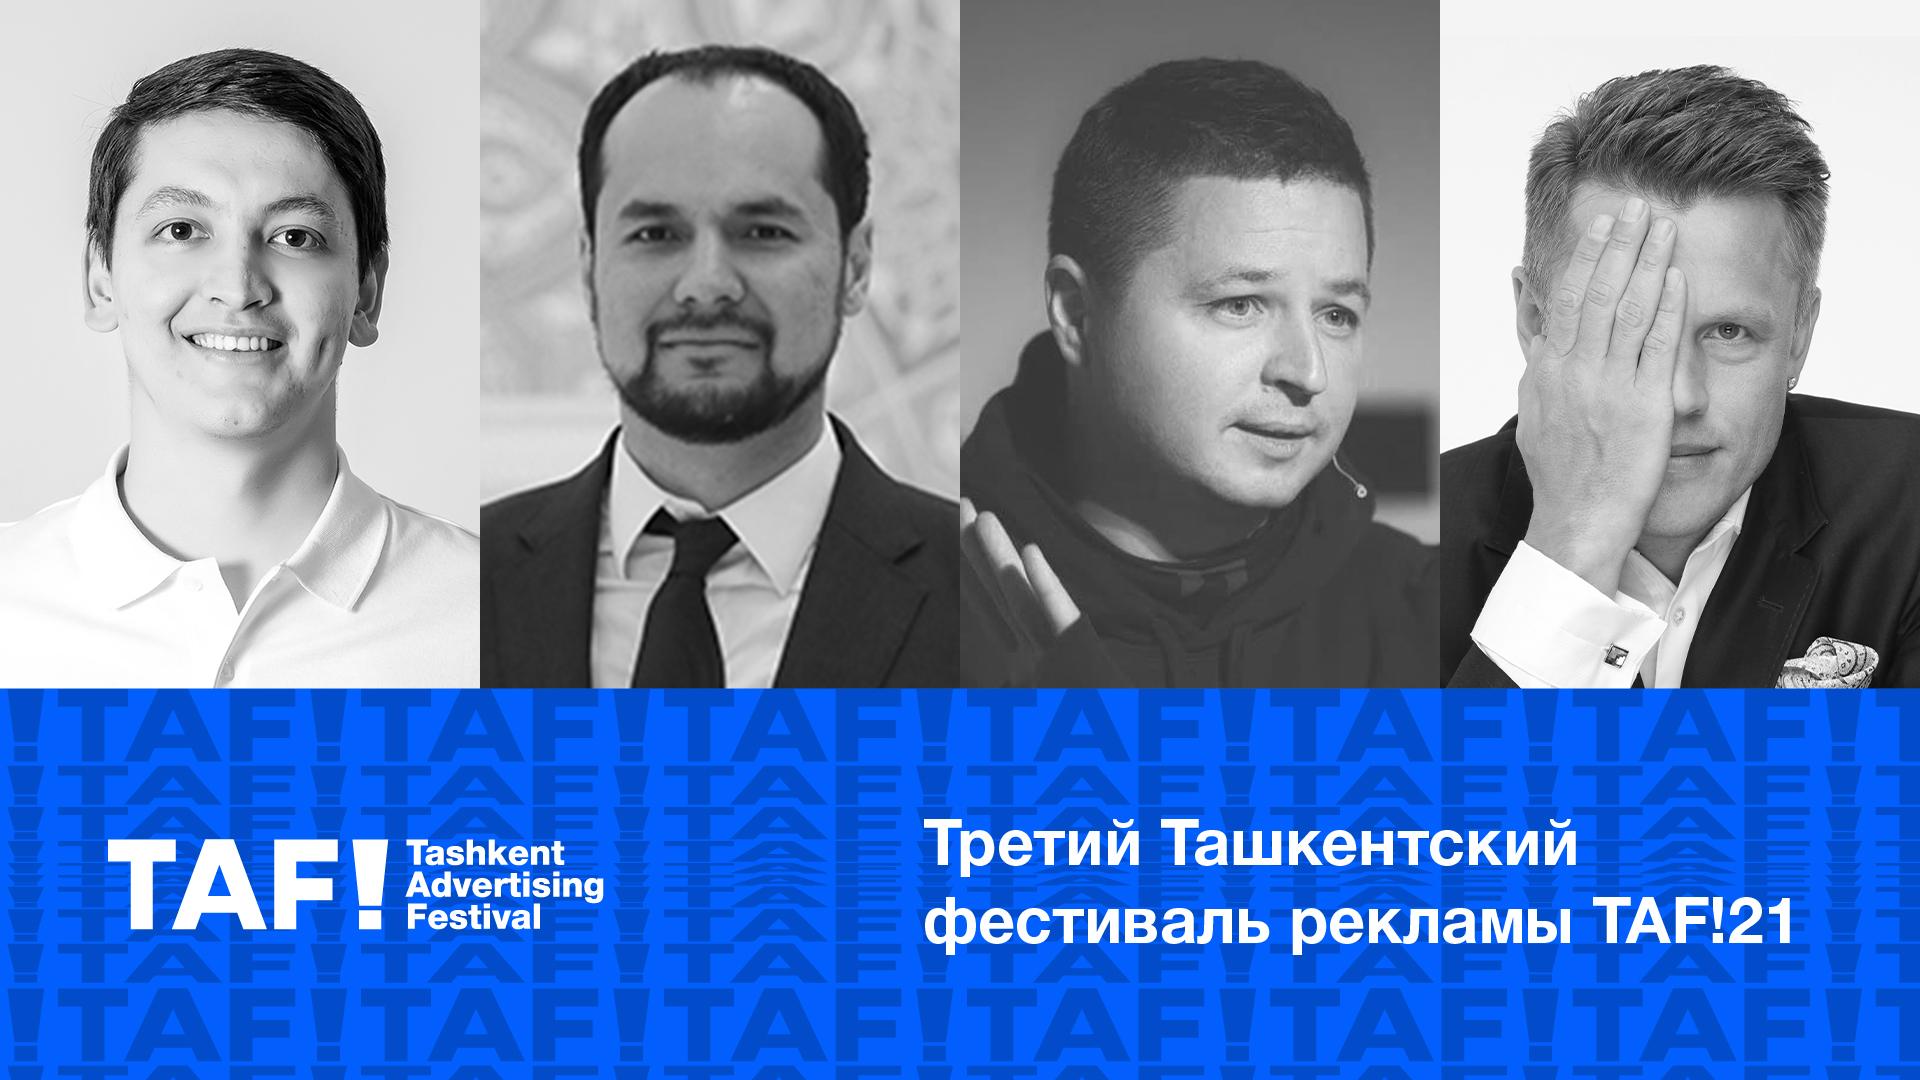 В Ташкенте пройдет Третий Ташкентский фестиваль рекламы TAF!21